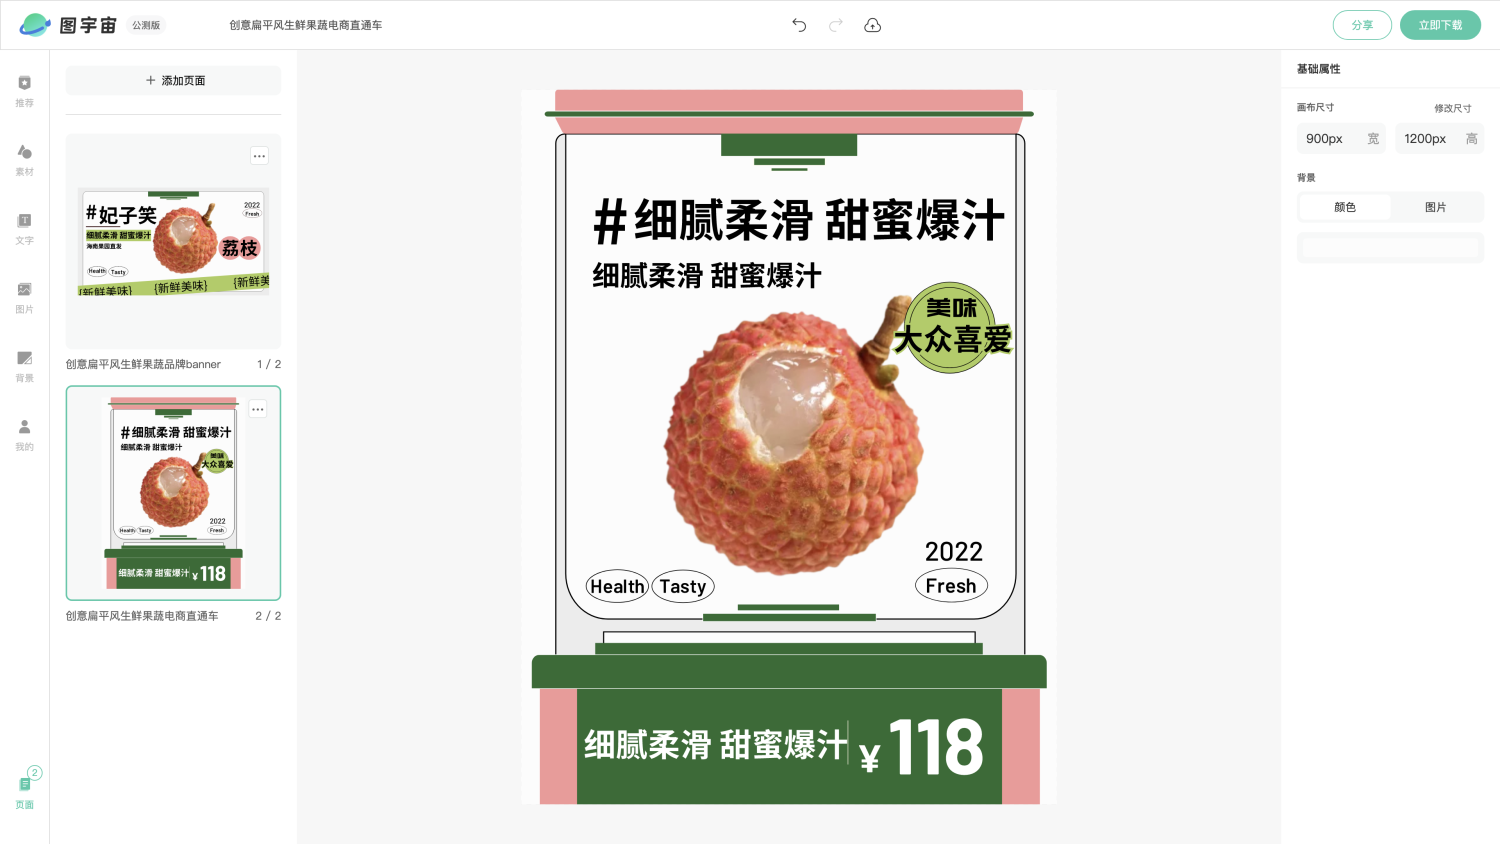 图宇宙-编辑器-创意扁平风生鲜果蔬品牌banner